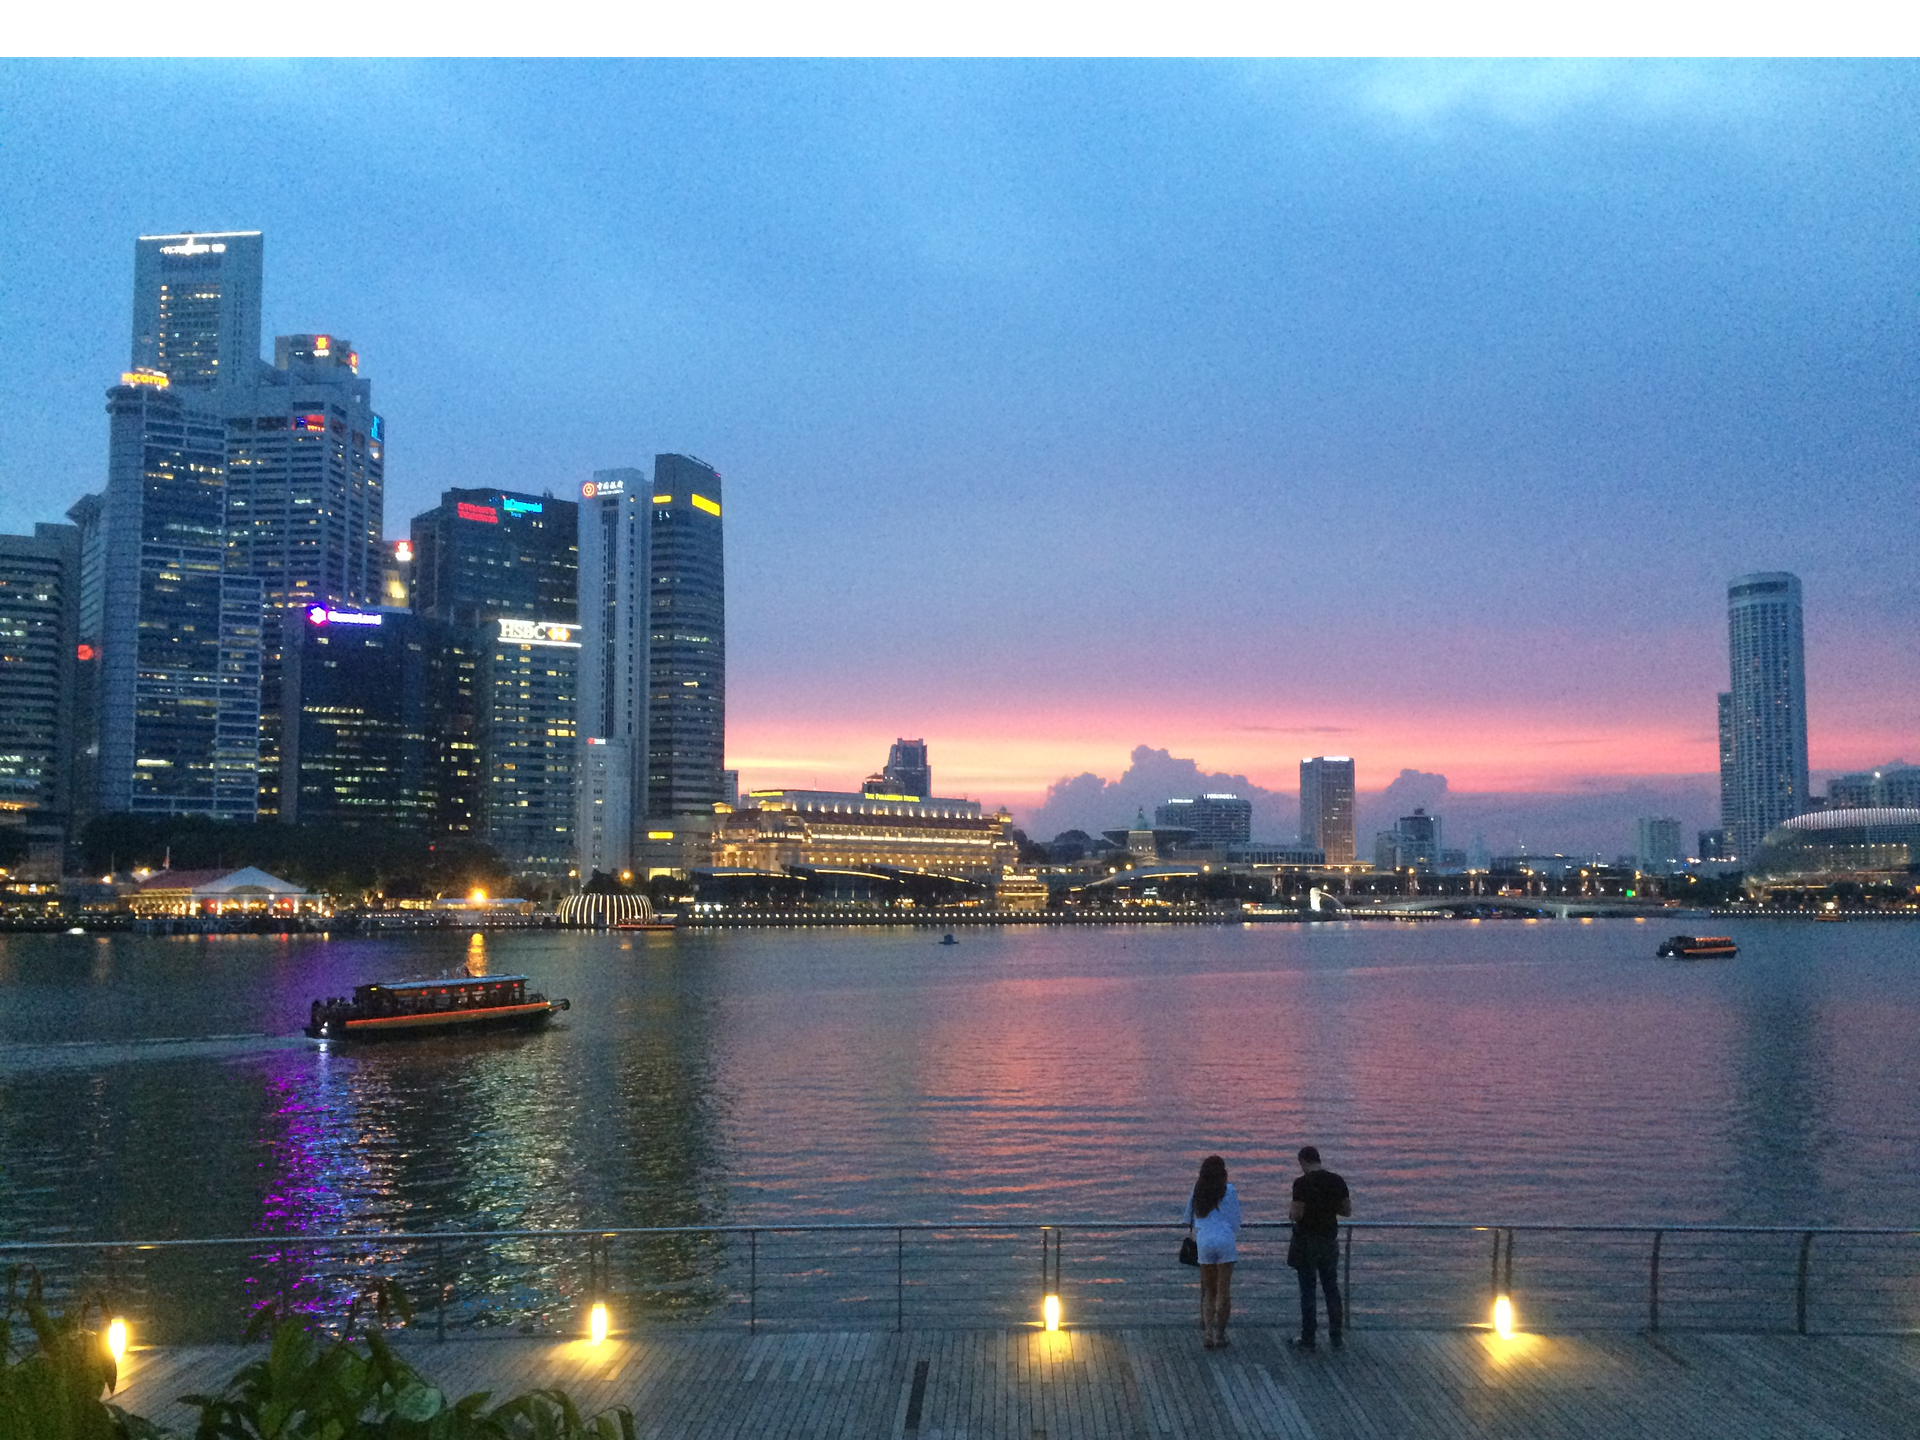 thumbnails Discover Singapore - Singapore River Arts & Architecture